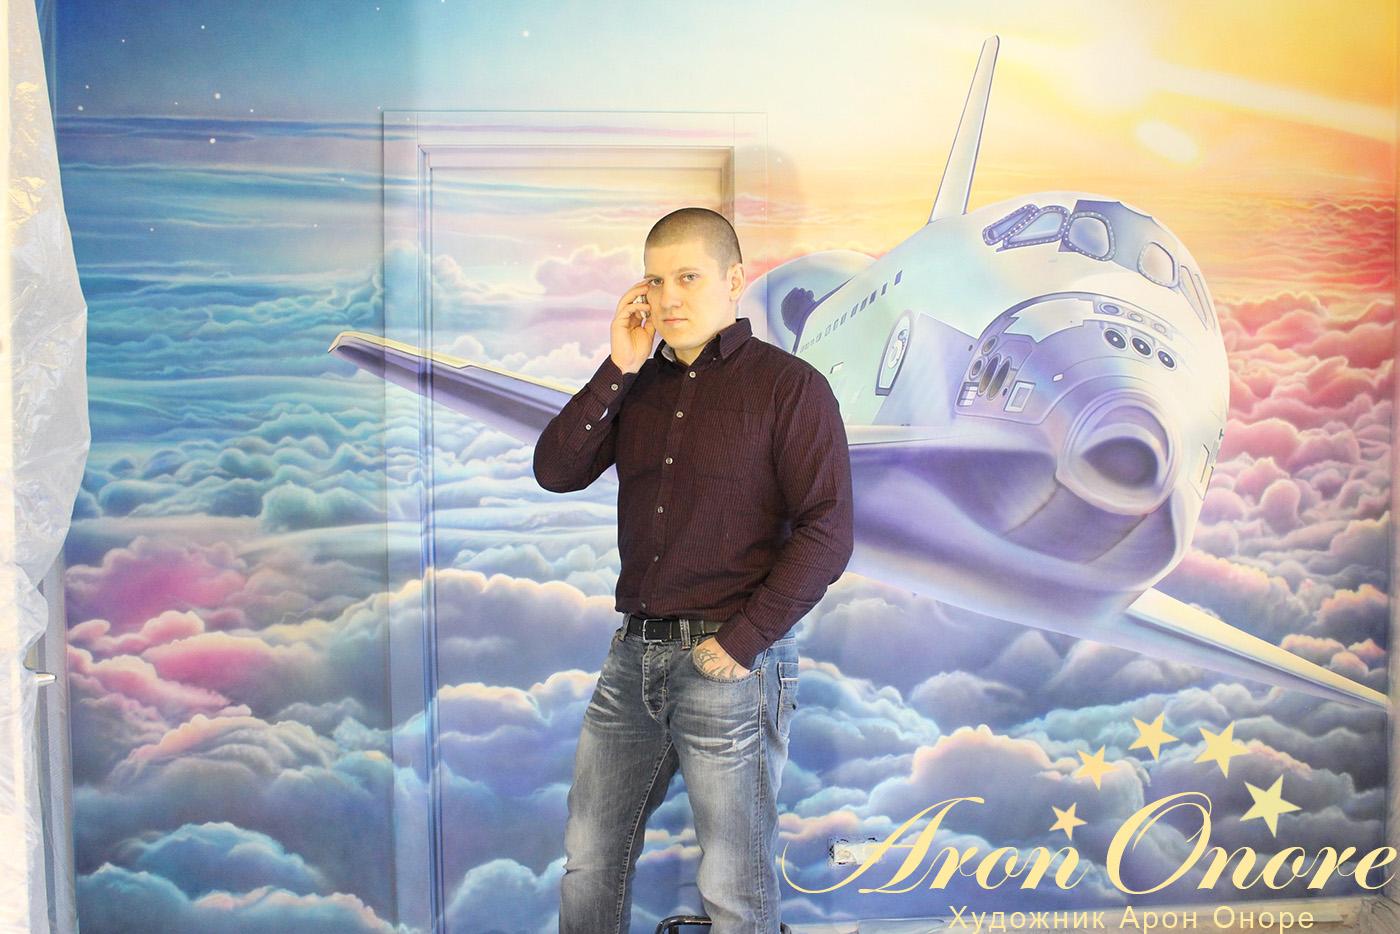 Художник Арон Оноре на возле Самолетика, аэрография в детской самолет нарисованный на стене